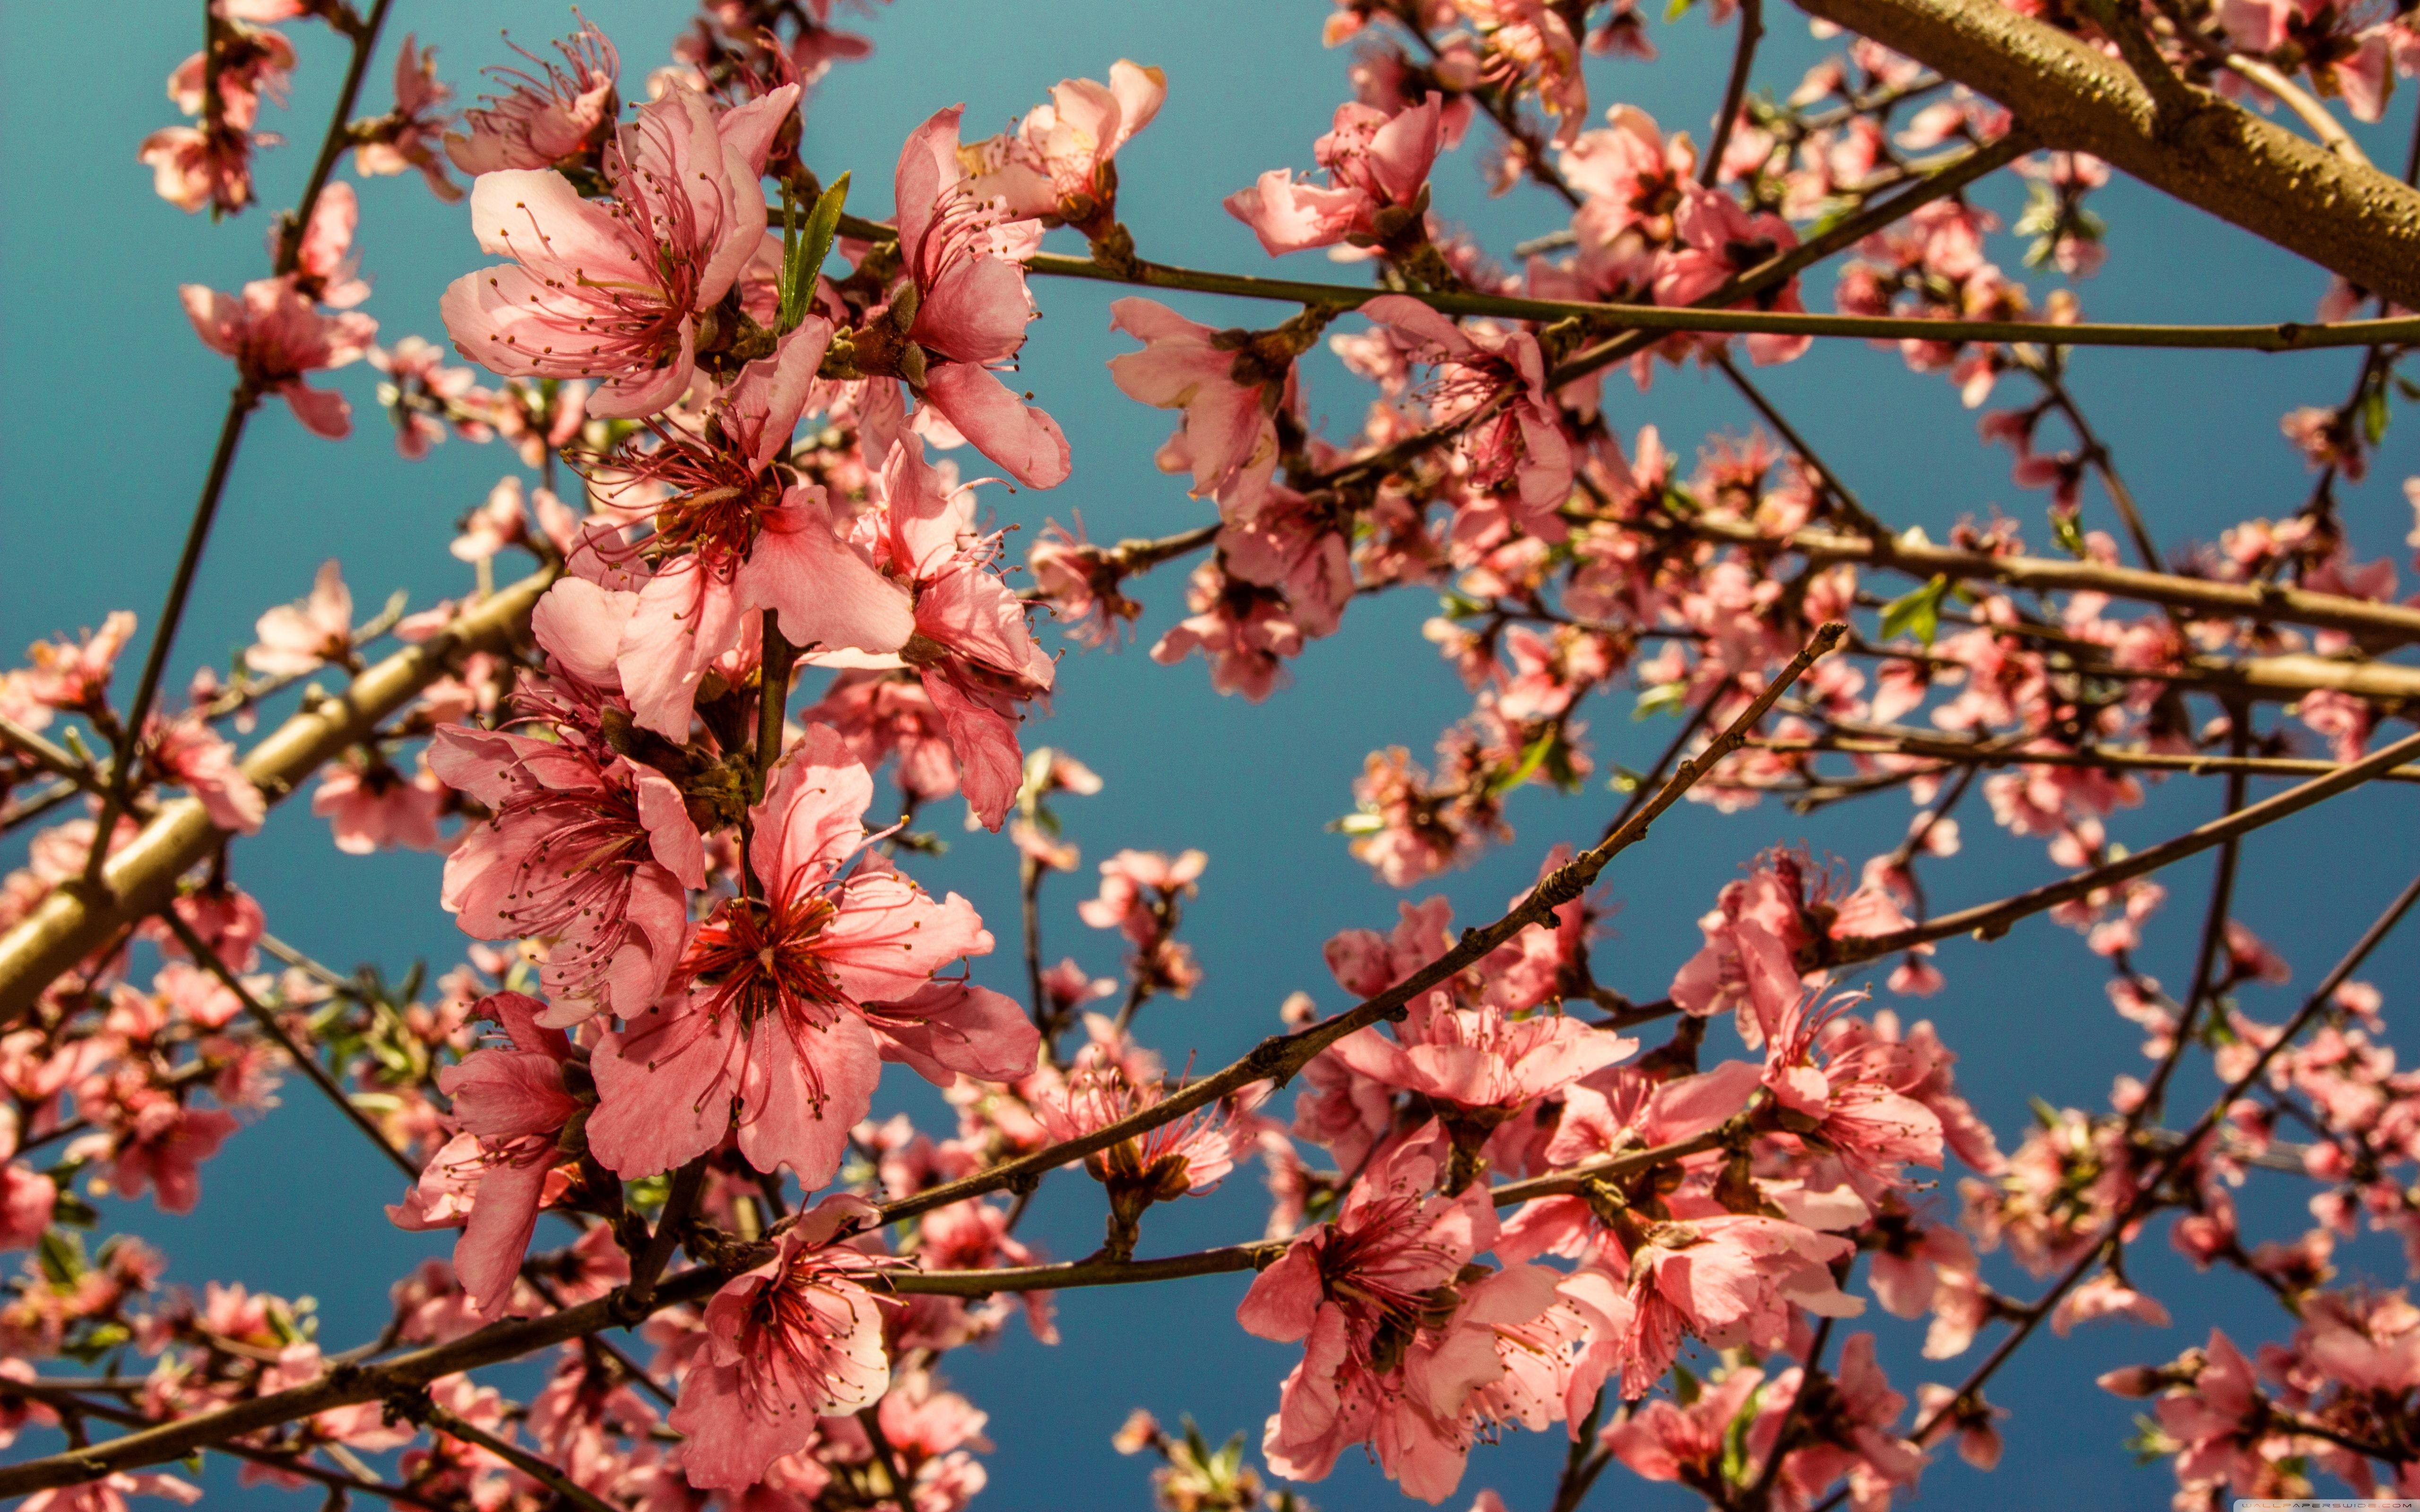 بکگراند شگفت انگیز و زیبا از شکوفه های درخت هلو با کیفیت عالی 